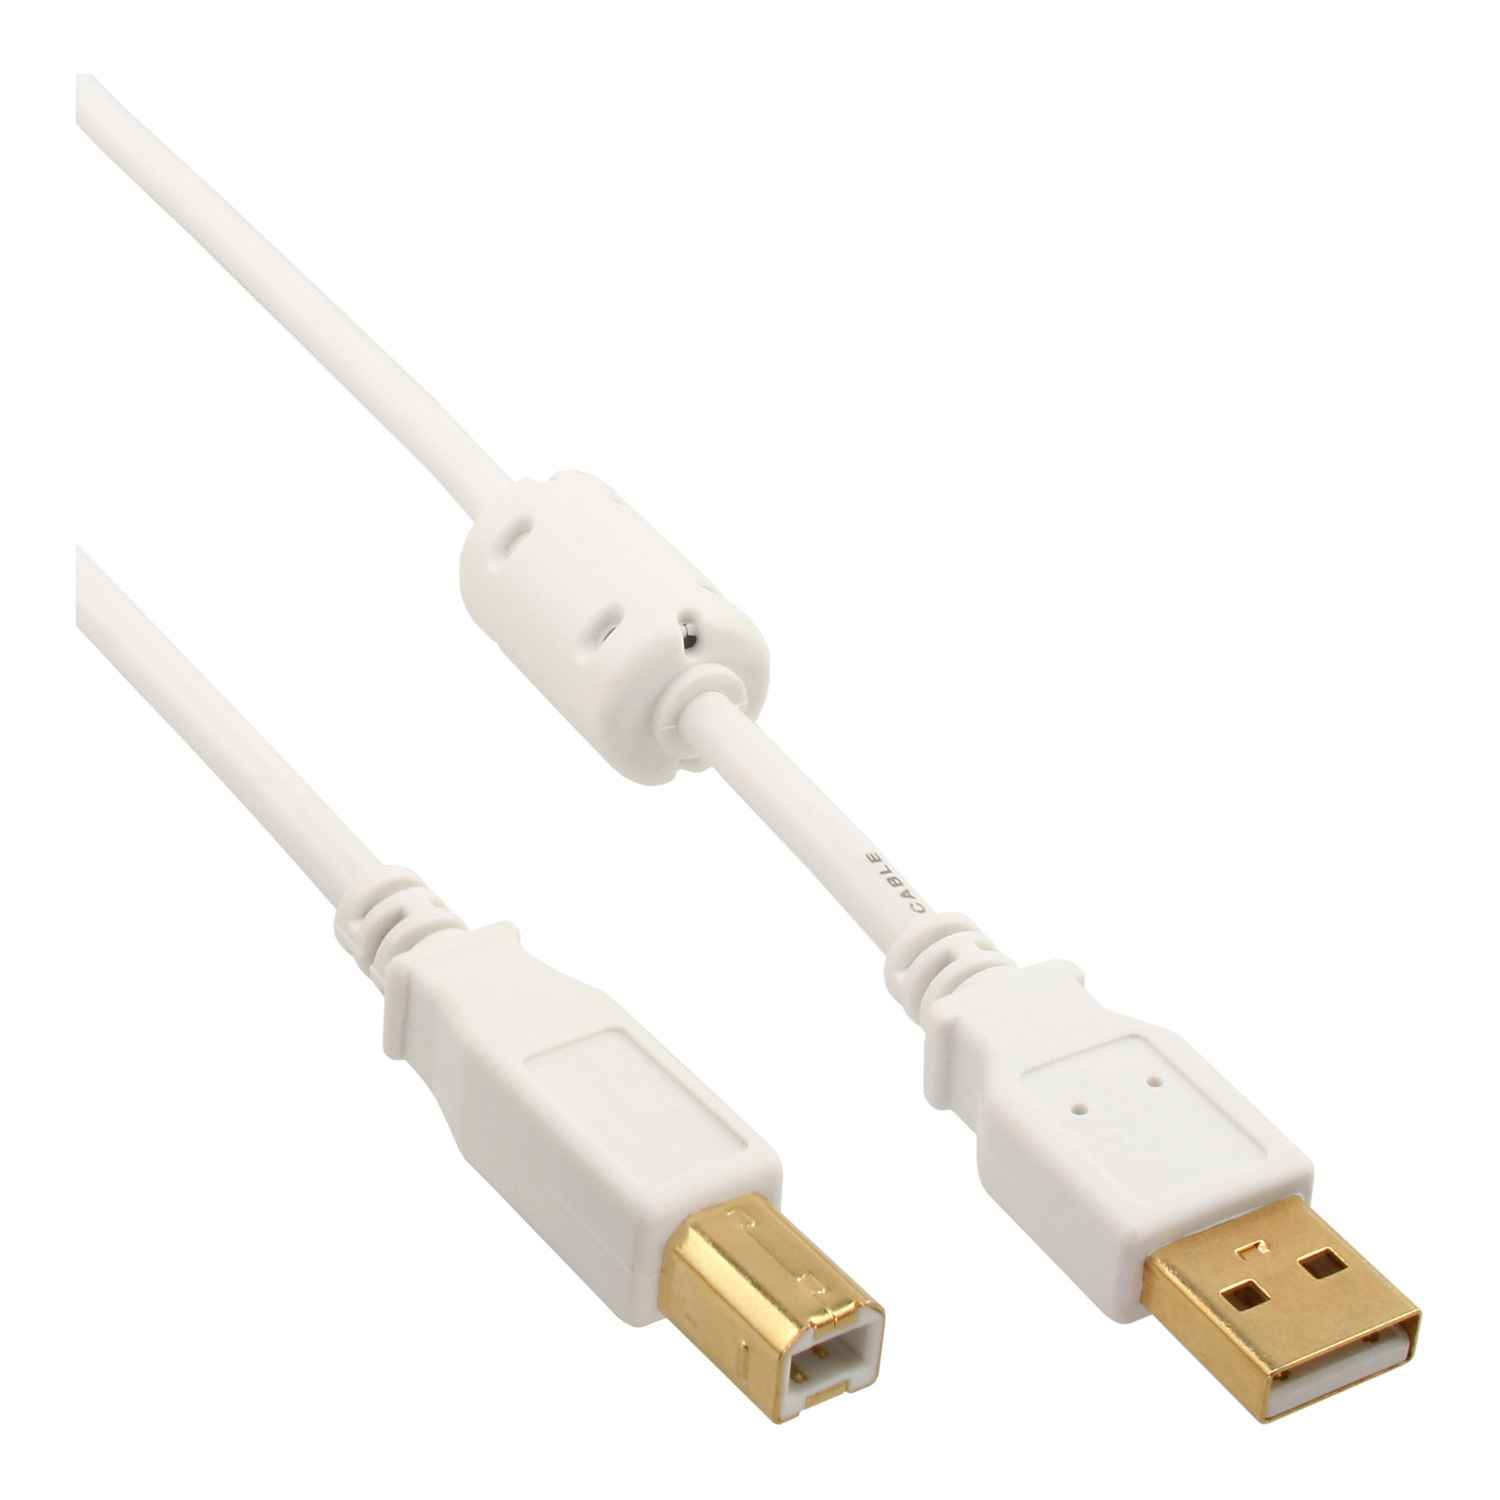 USB Kabel mit B, INLINE an 2.0 USB A Ferritkern, gold, 1m weiß InLine® / Kabel,